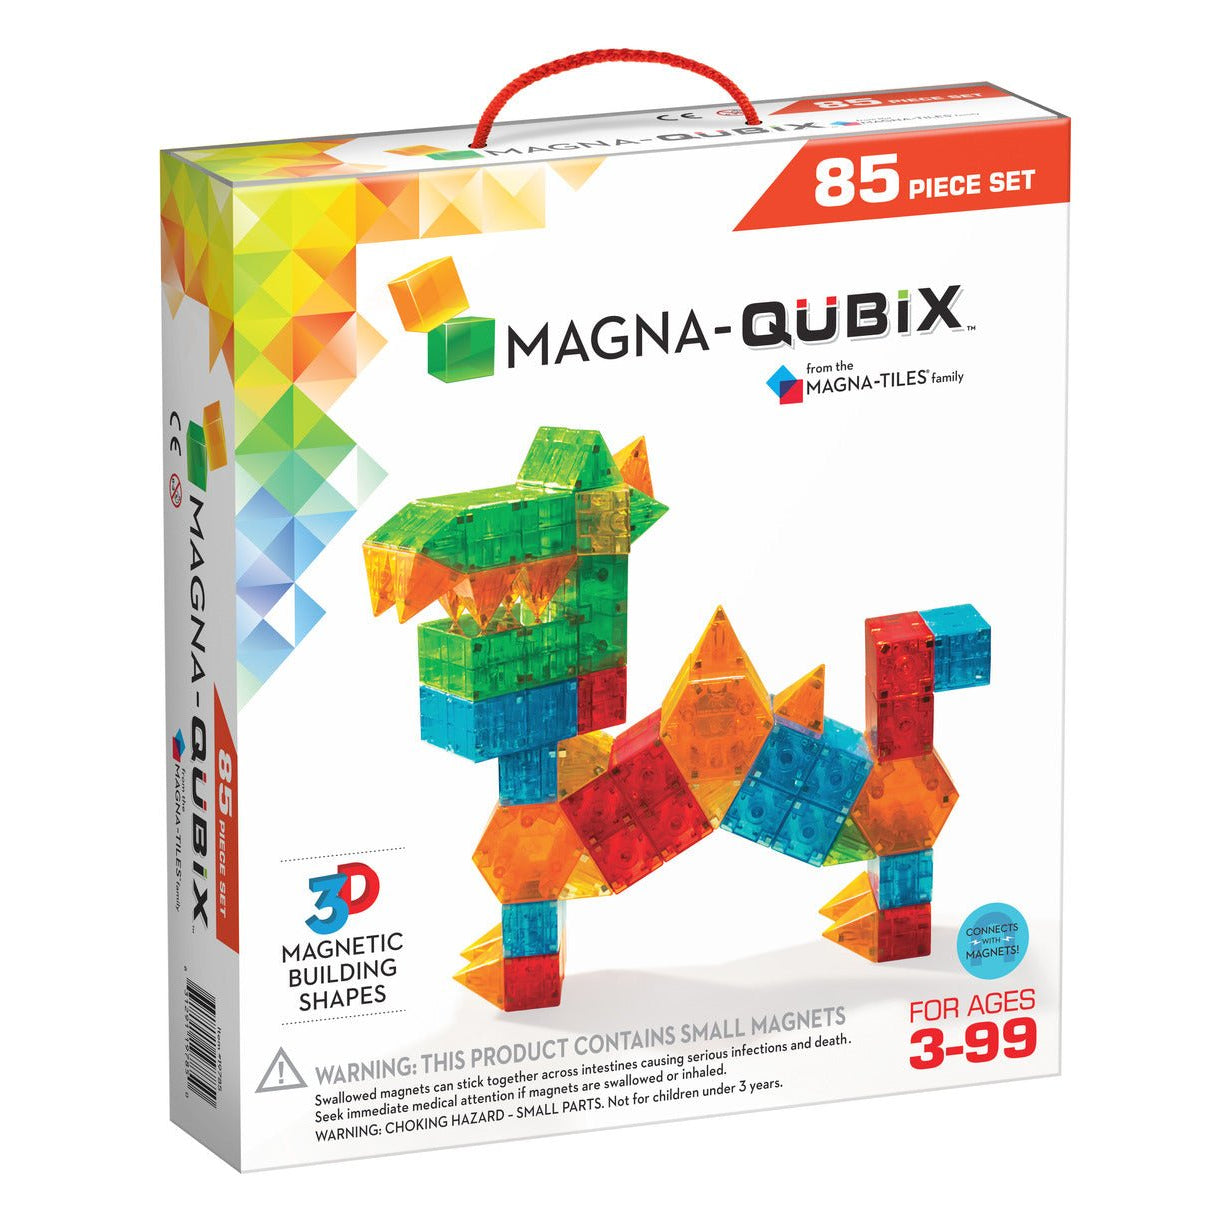 Magna-Qubix 85 Piece Set - Safari ltd